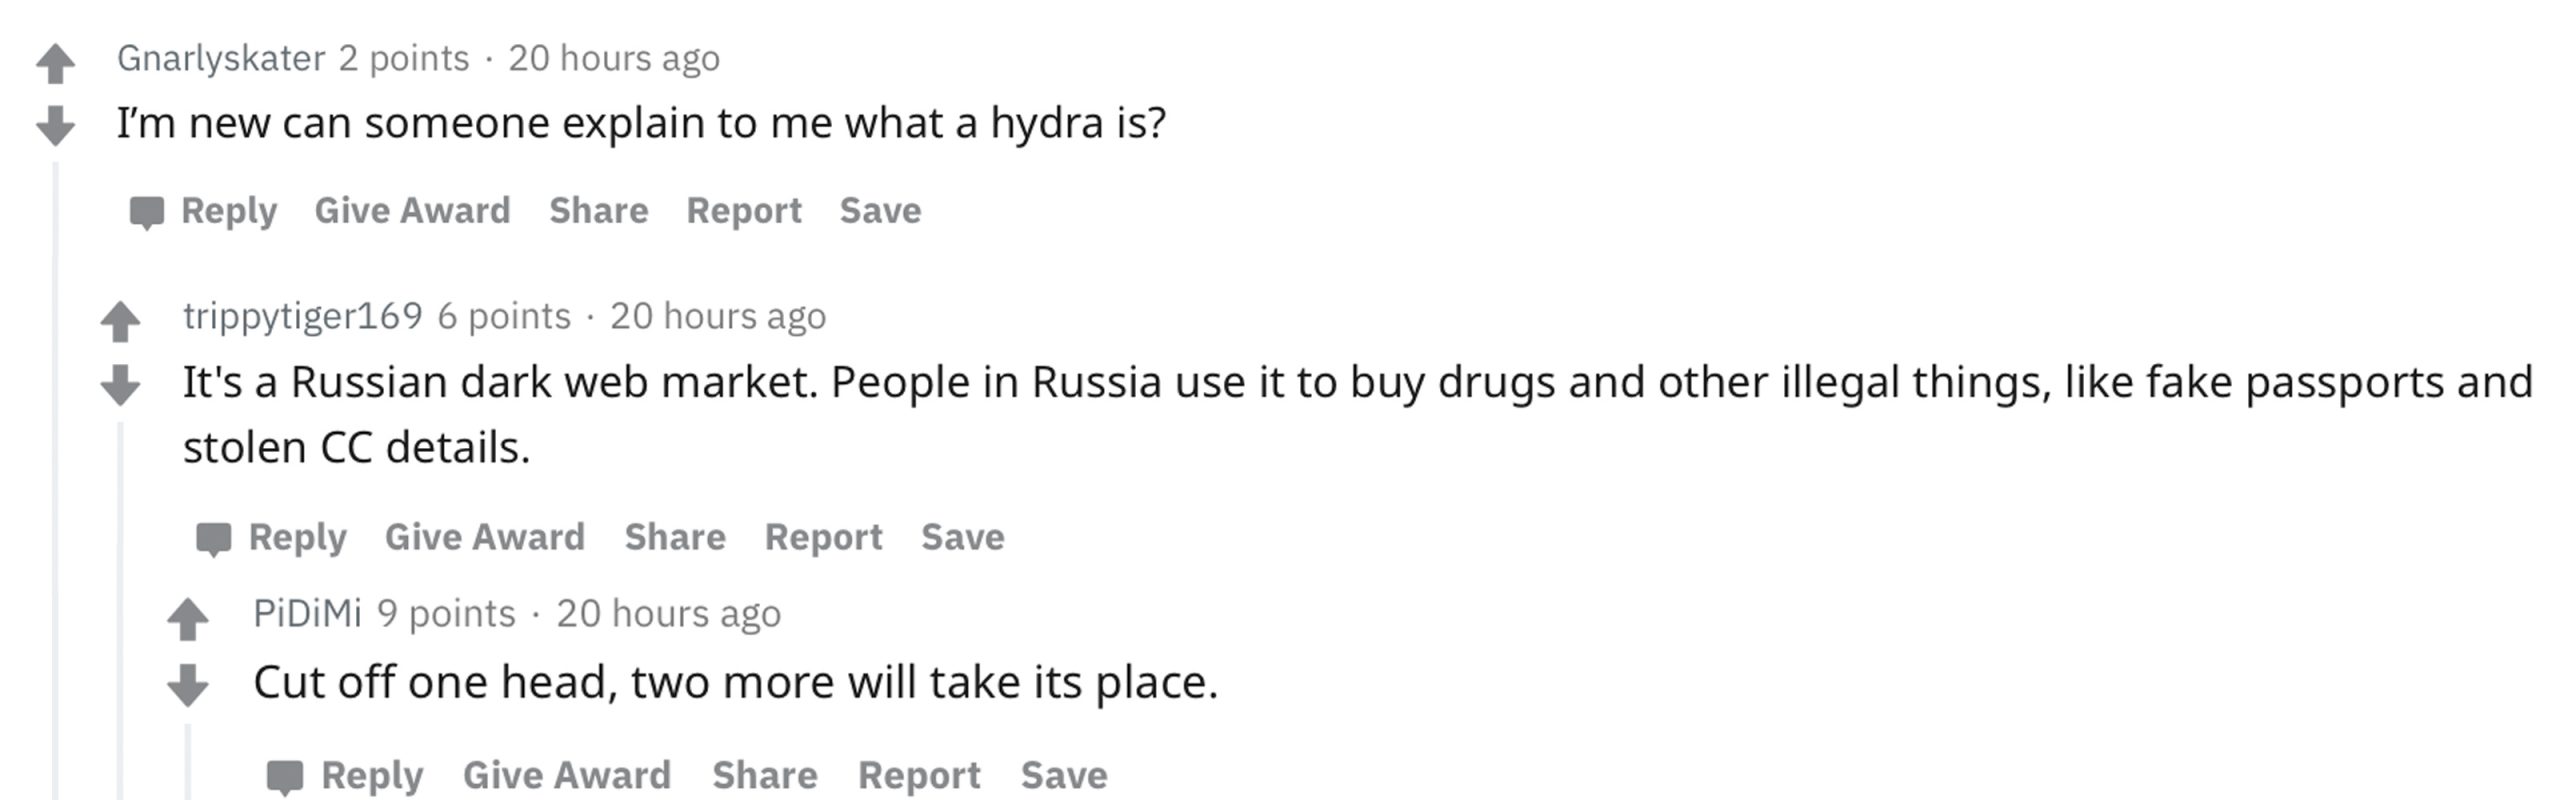 俄罗斯的Hydra 暗网市场计划出售1.46亿美元的代币